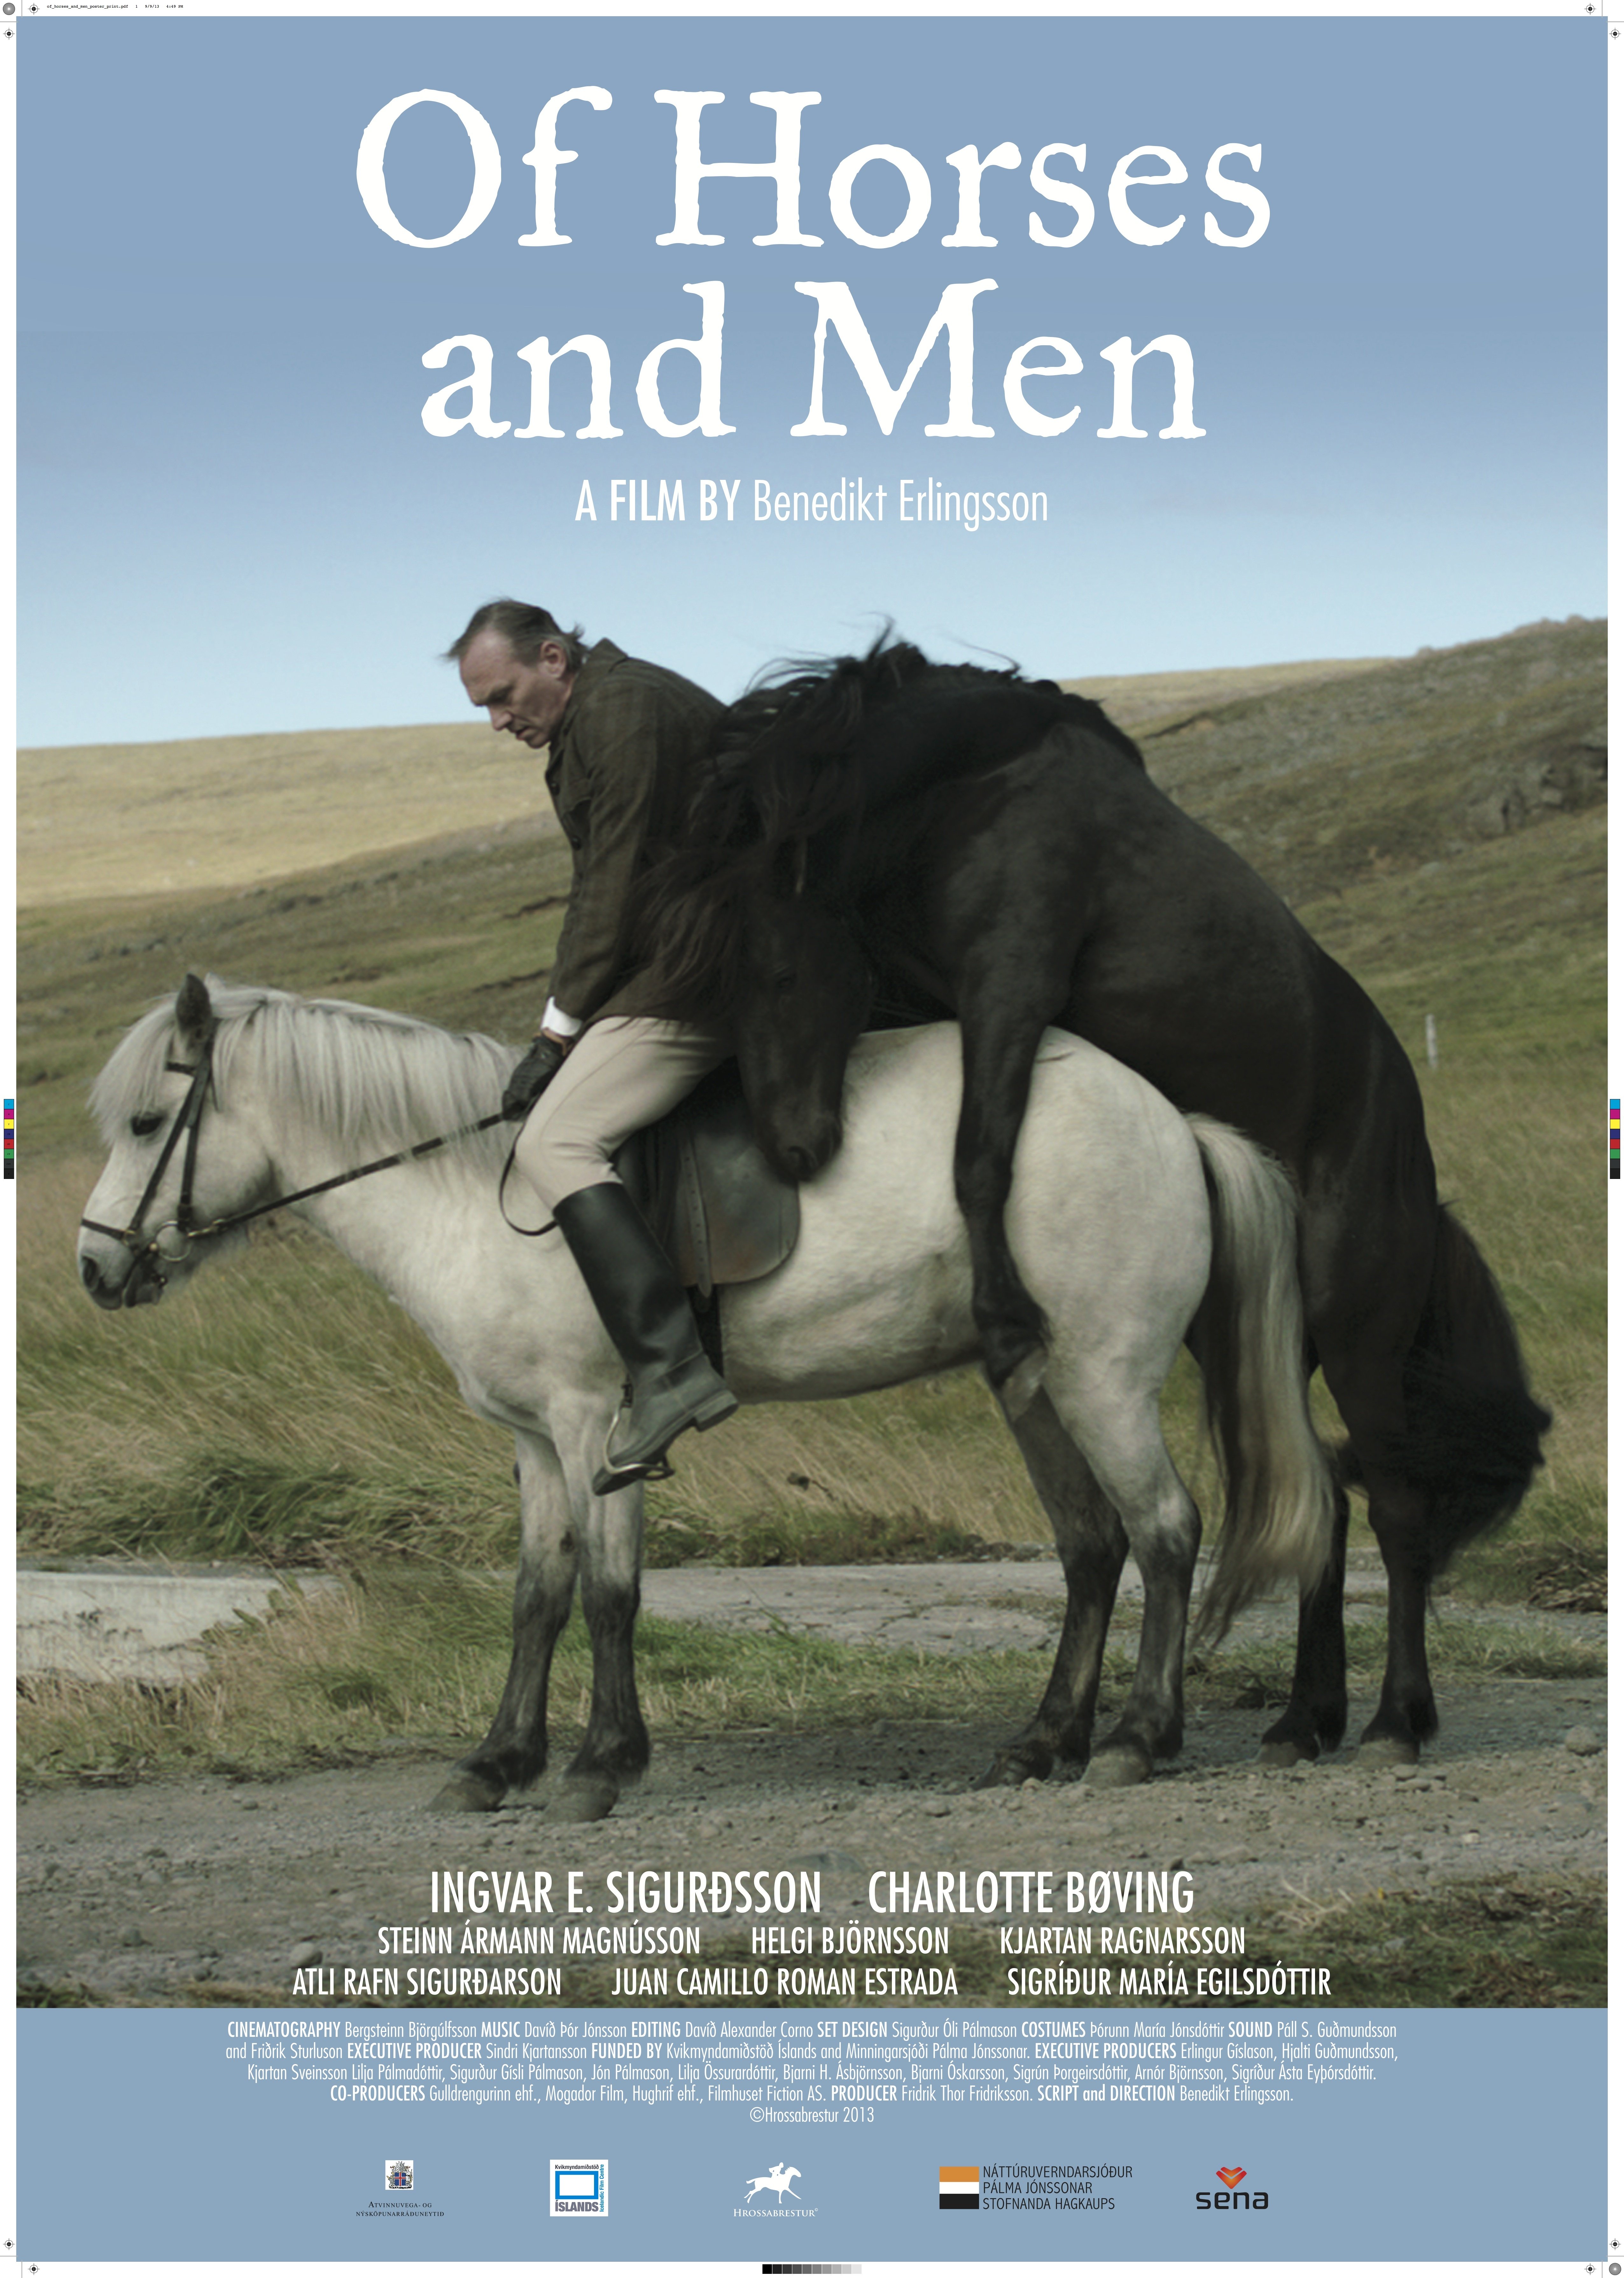 Of Horses and Men (2013) Screenshot 5 